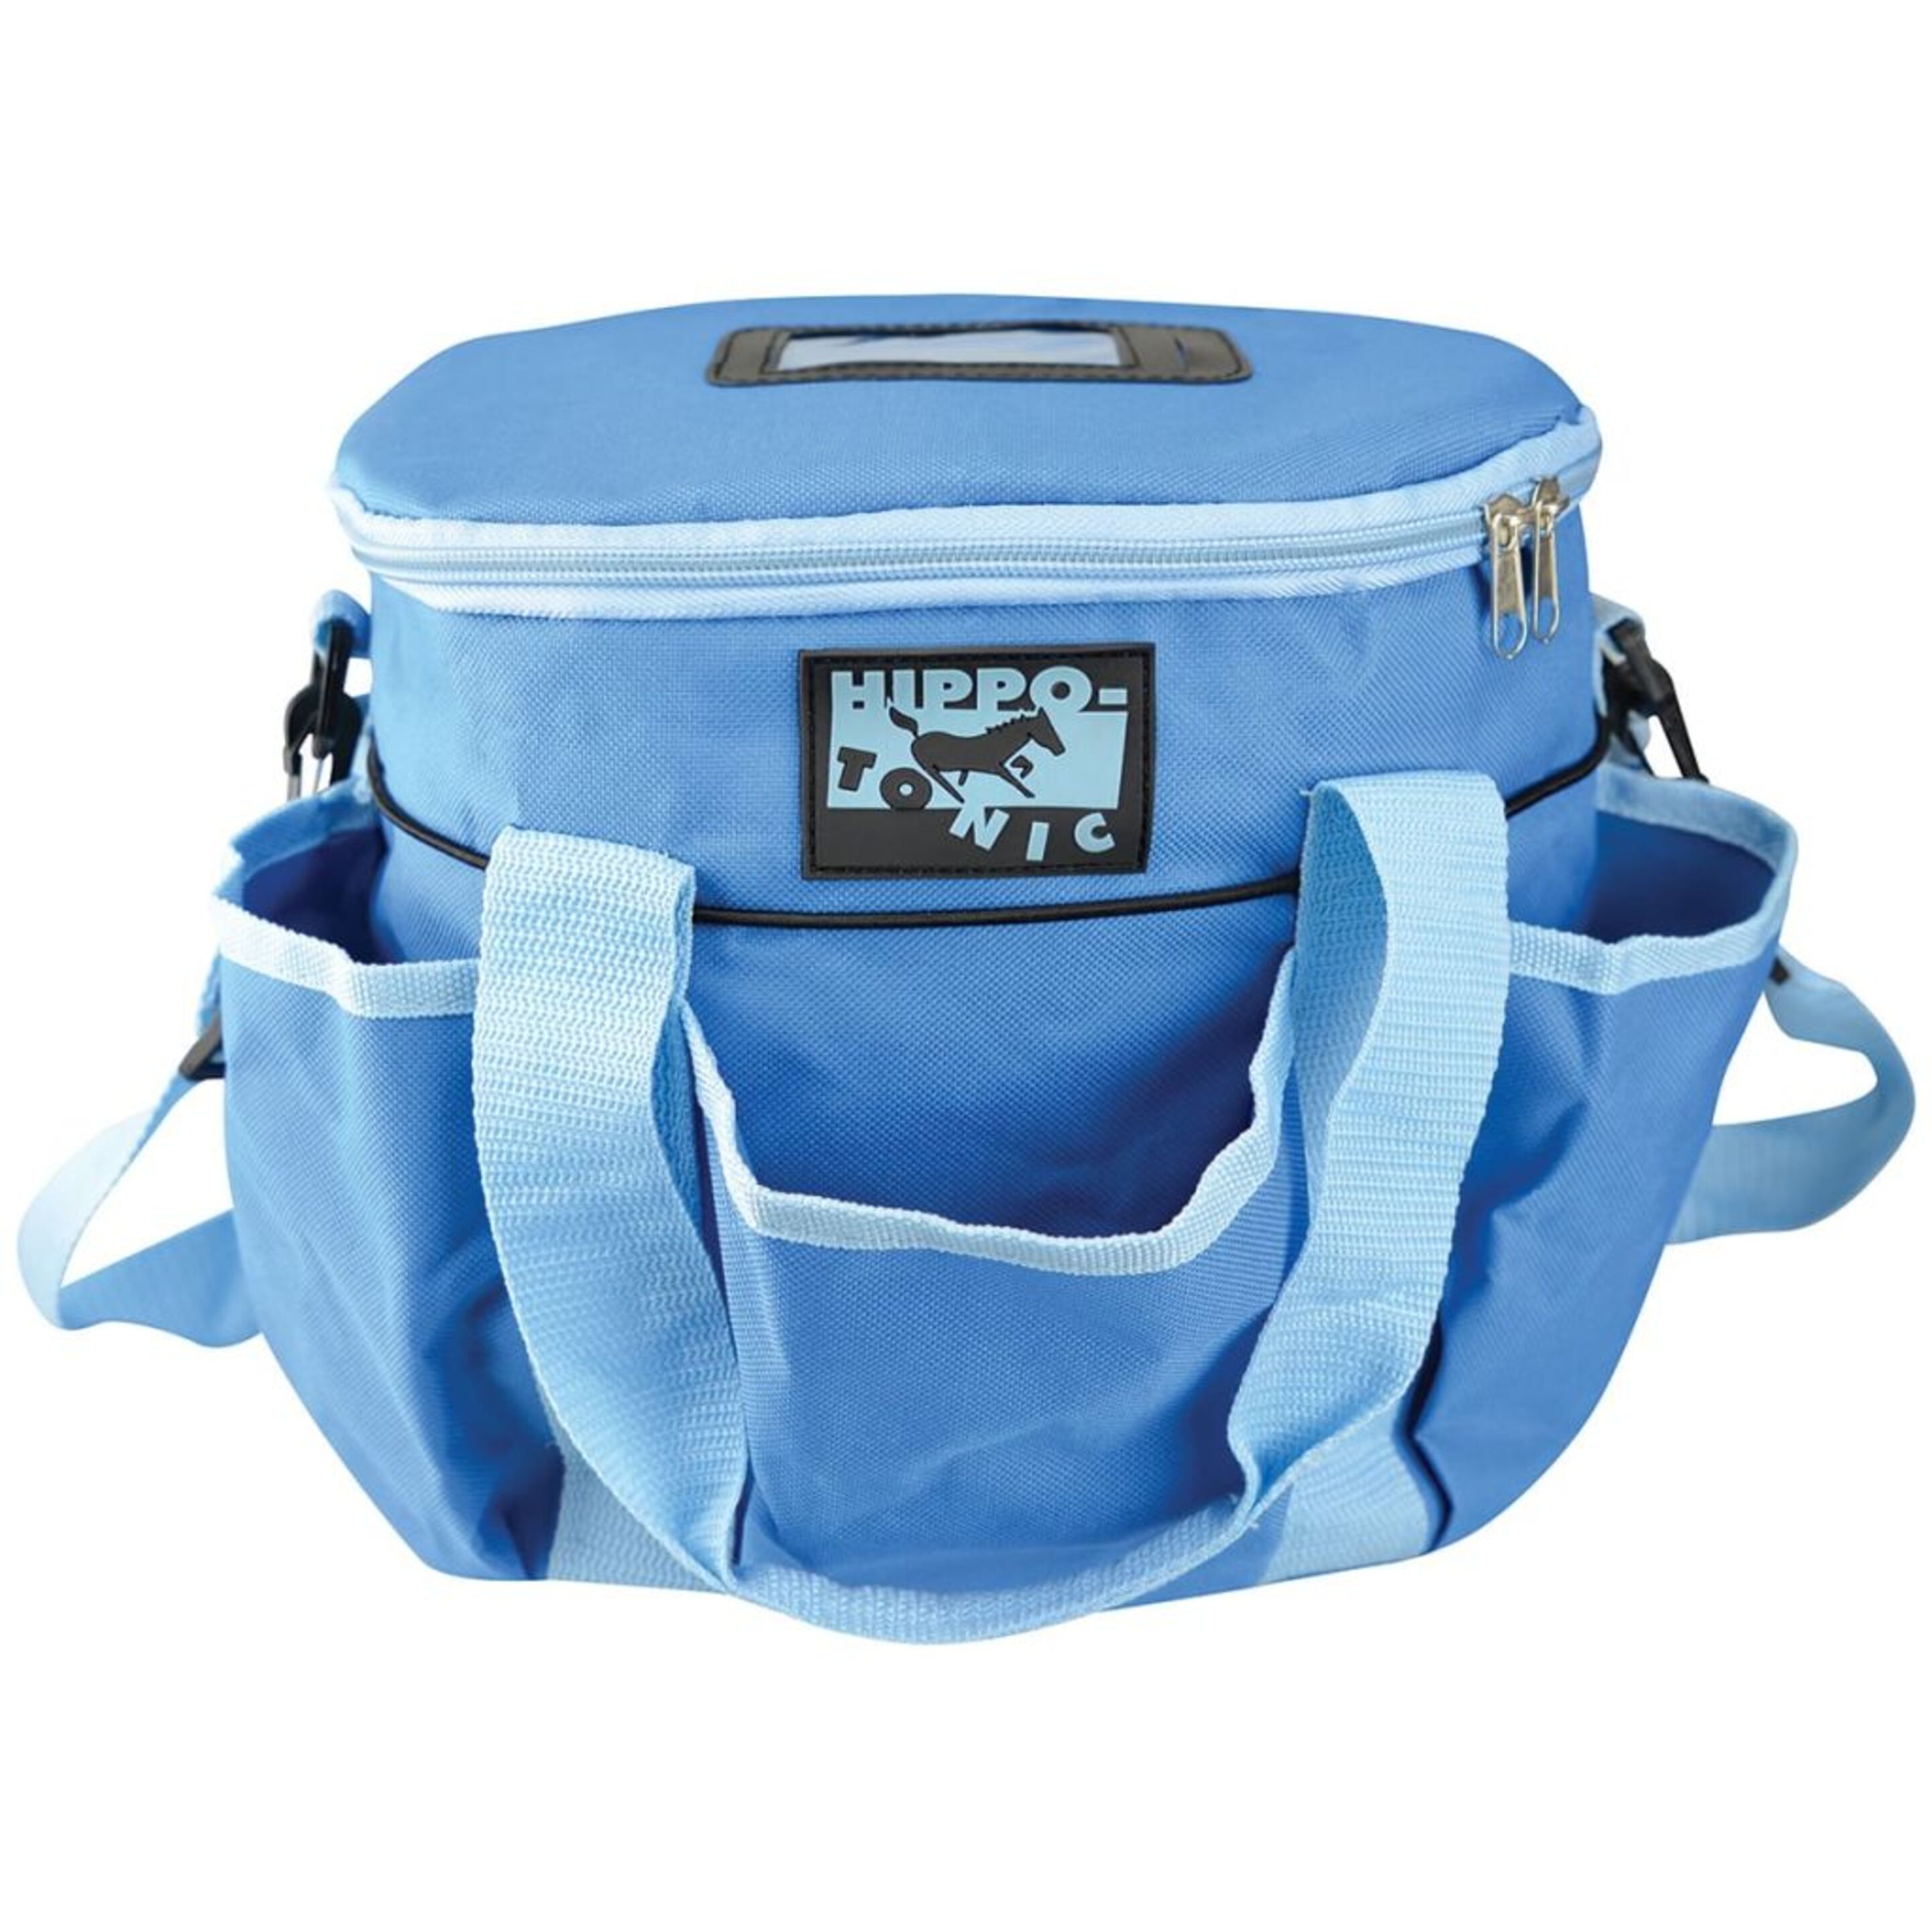 Hippo-tonic Bolsa De Aseo Para Caballos Pro 3 Azul Claro 700196012 - azul-claro - 